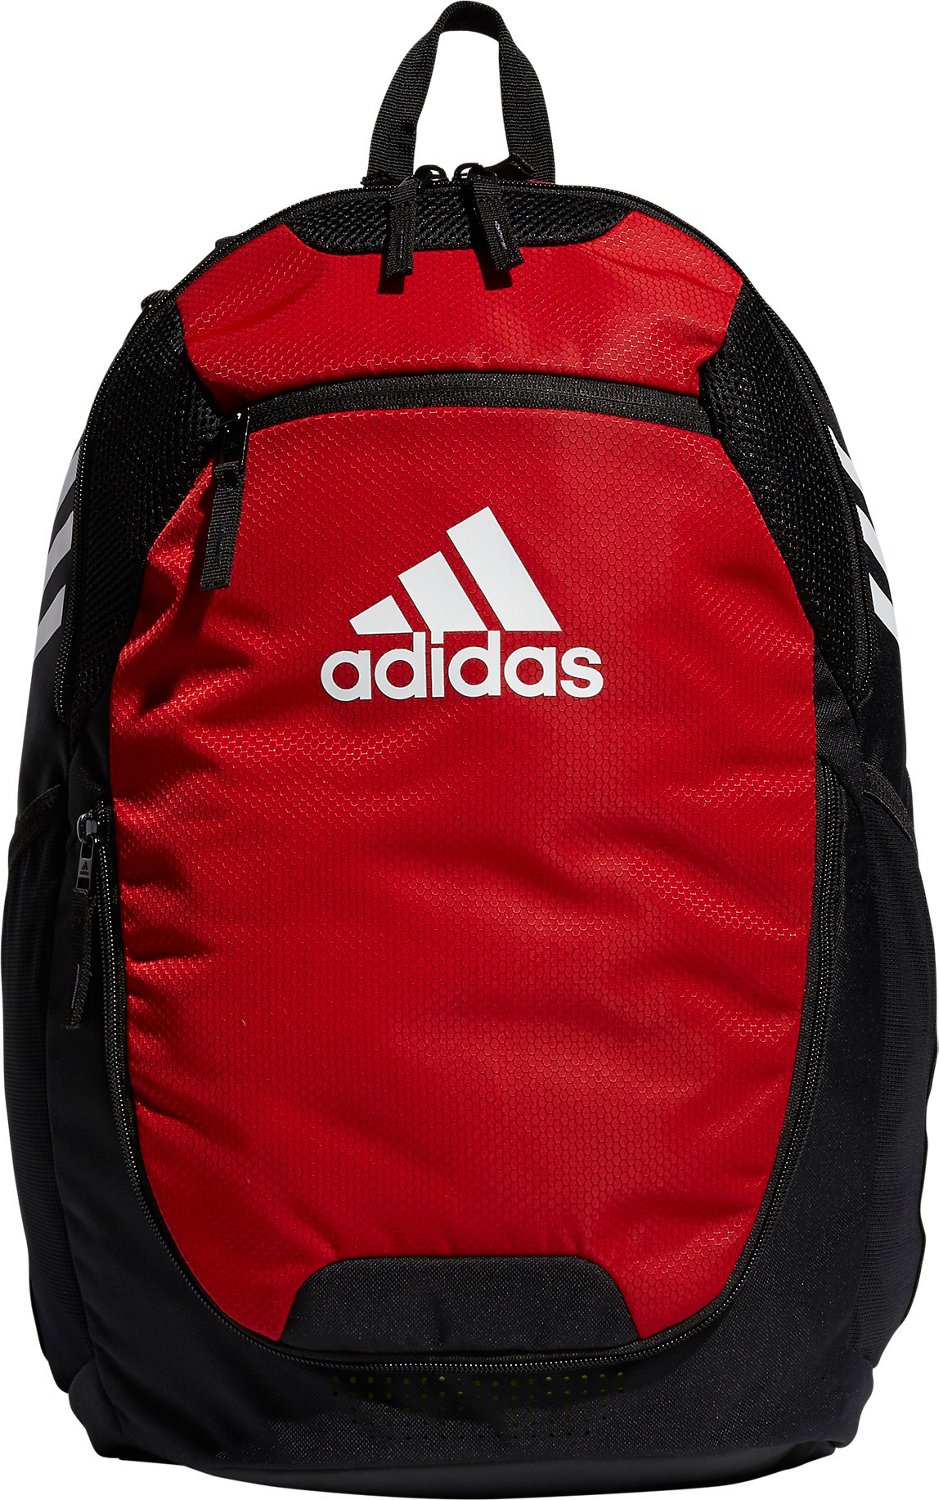 Soccer Bag Backpack Basketball Football Ball Holder Compartment Boys Men Women for sale online 